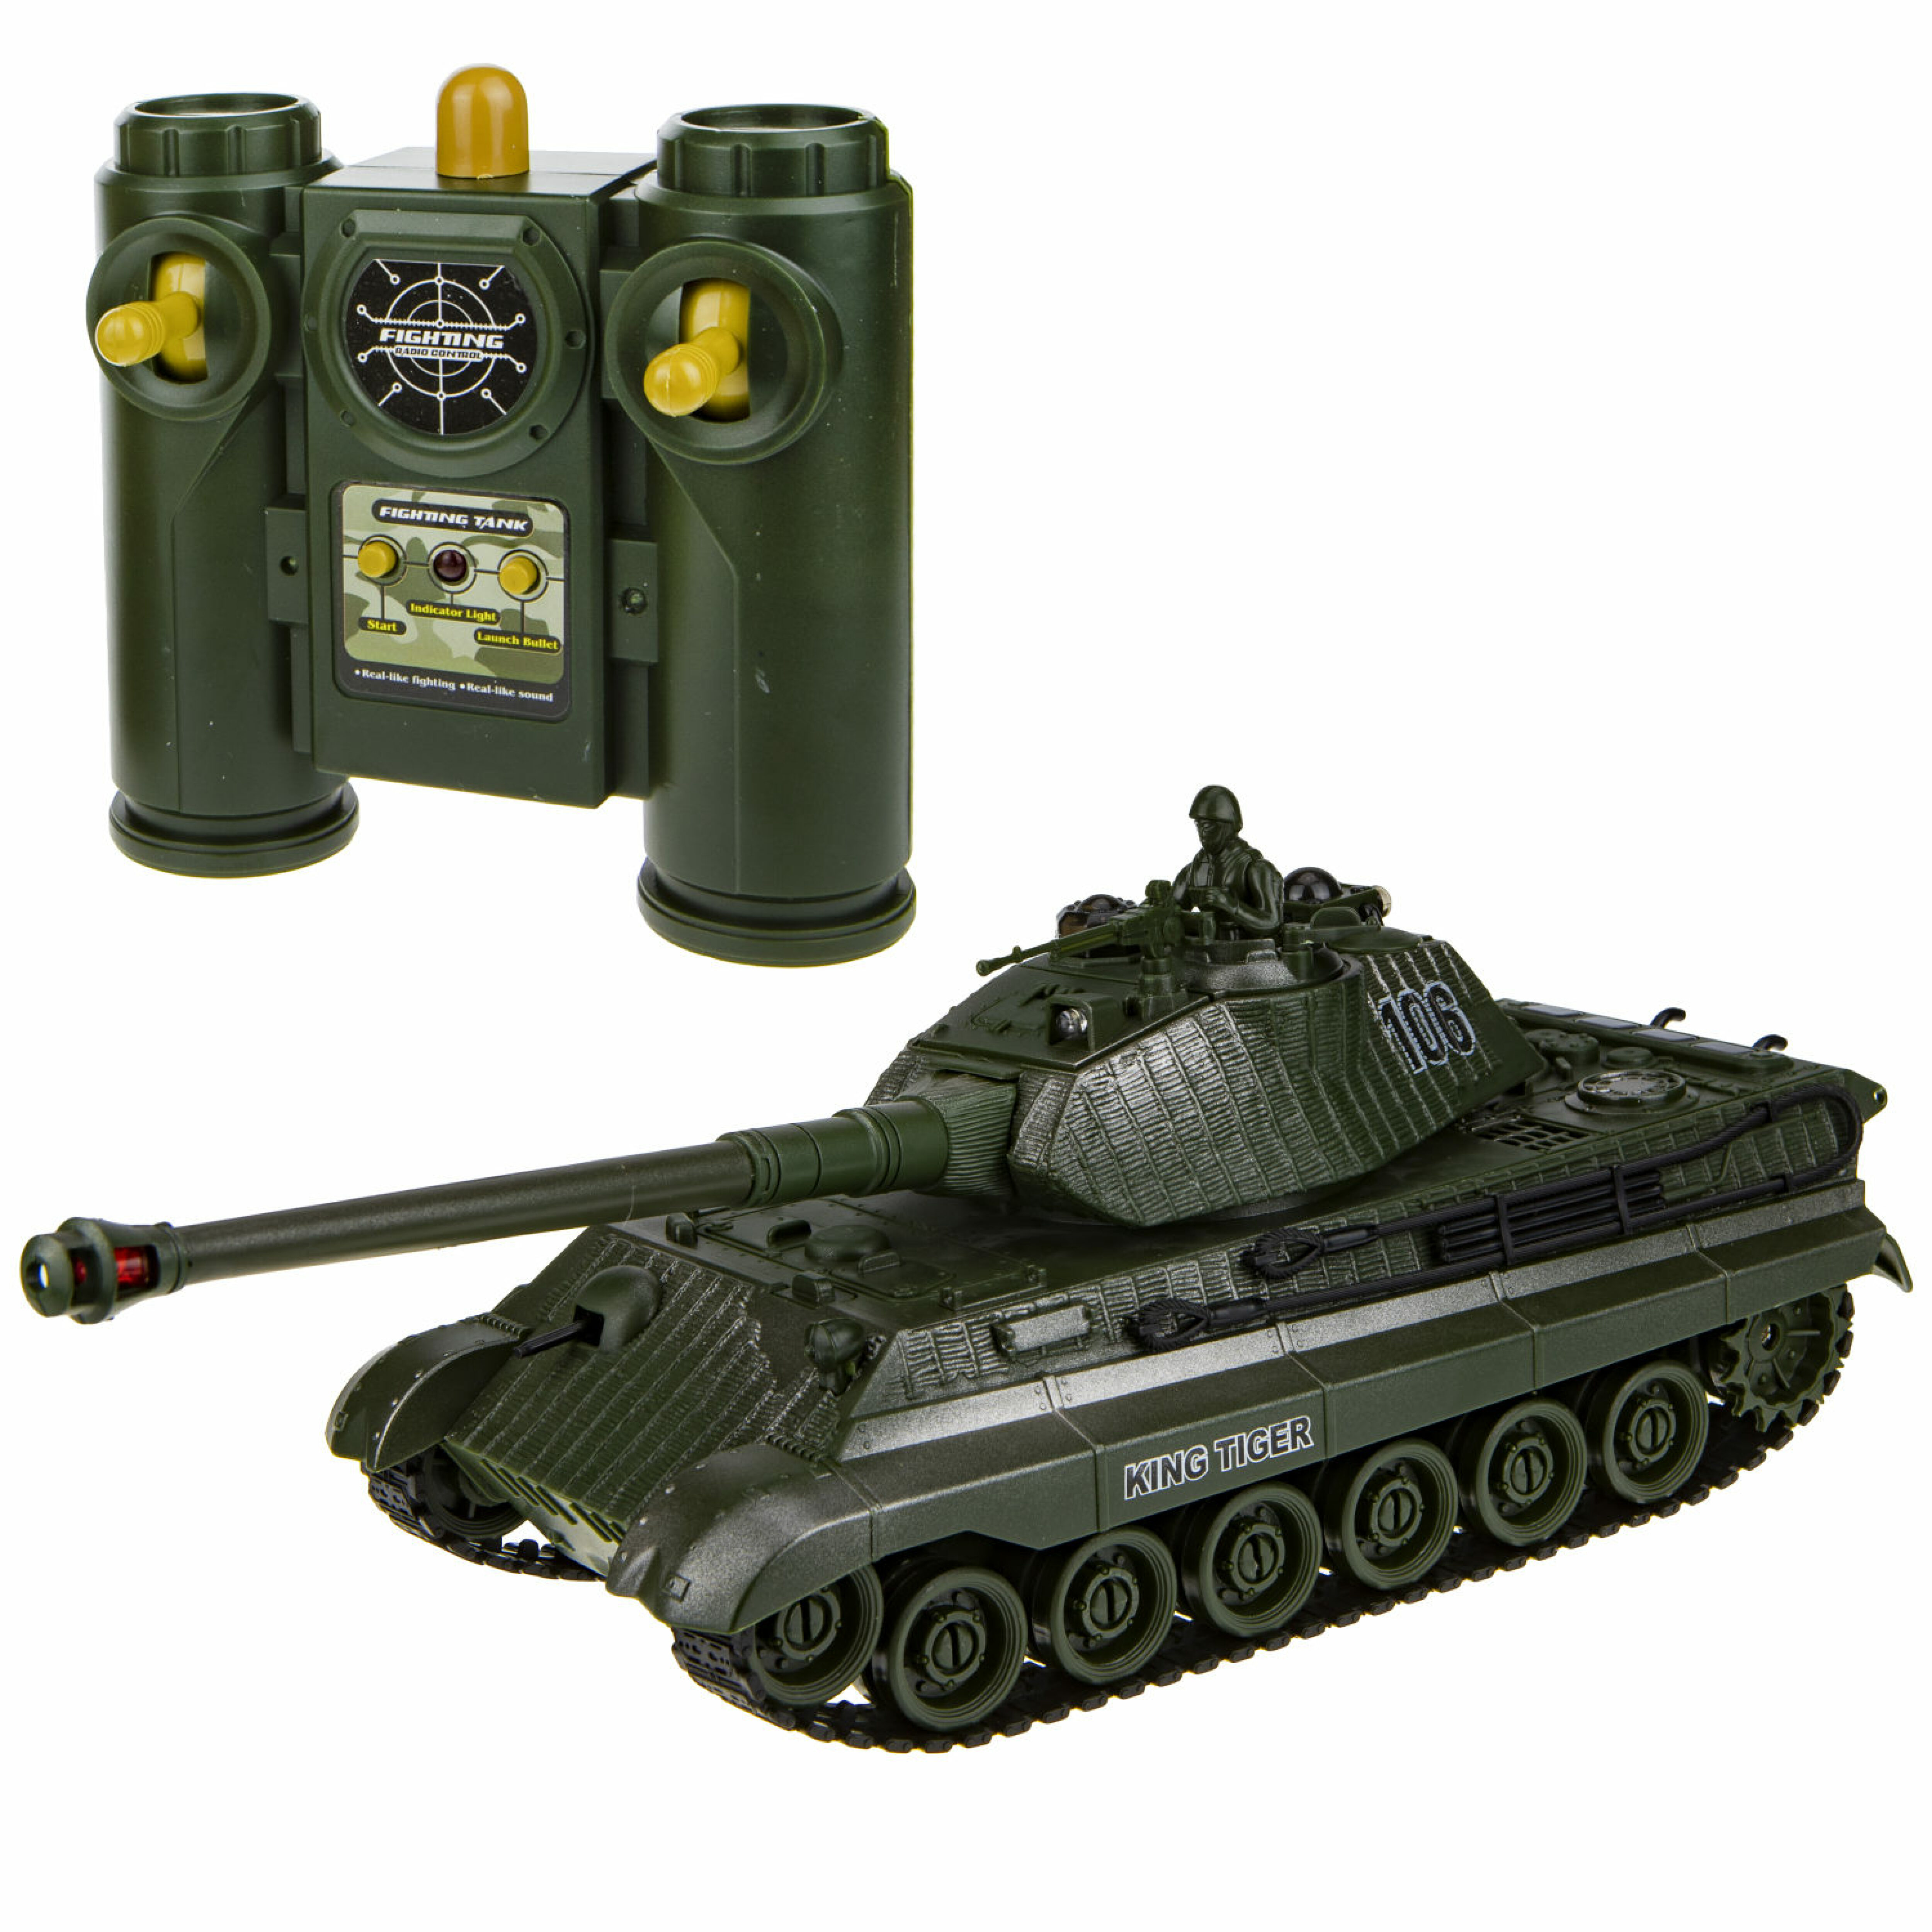 1toy Взвод танк на р/у, 2,4 ГГц, 1:28 (35 см), движение во все стороны, вращение башни, свет и звук, индикатор попаданий, подходит для танкового боя Т17685